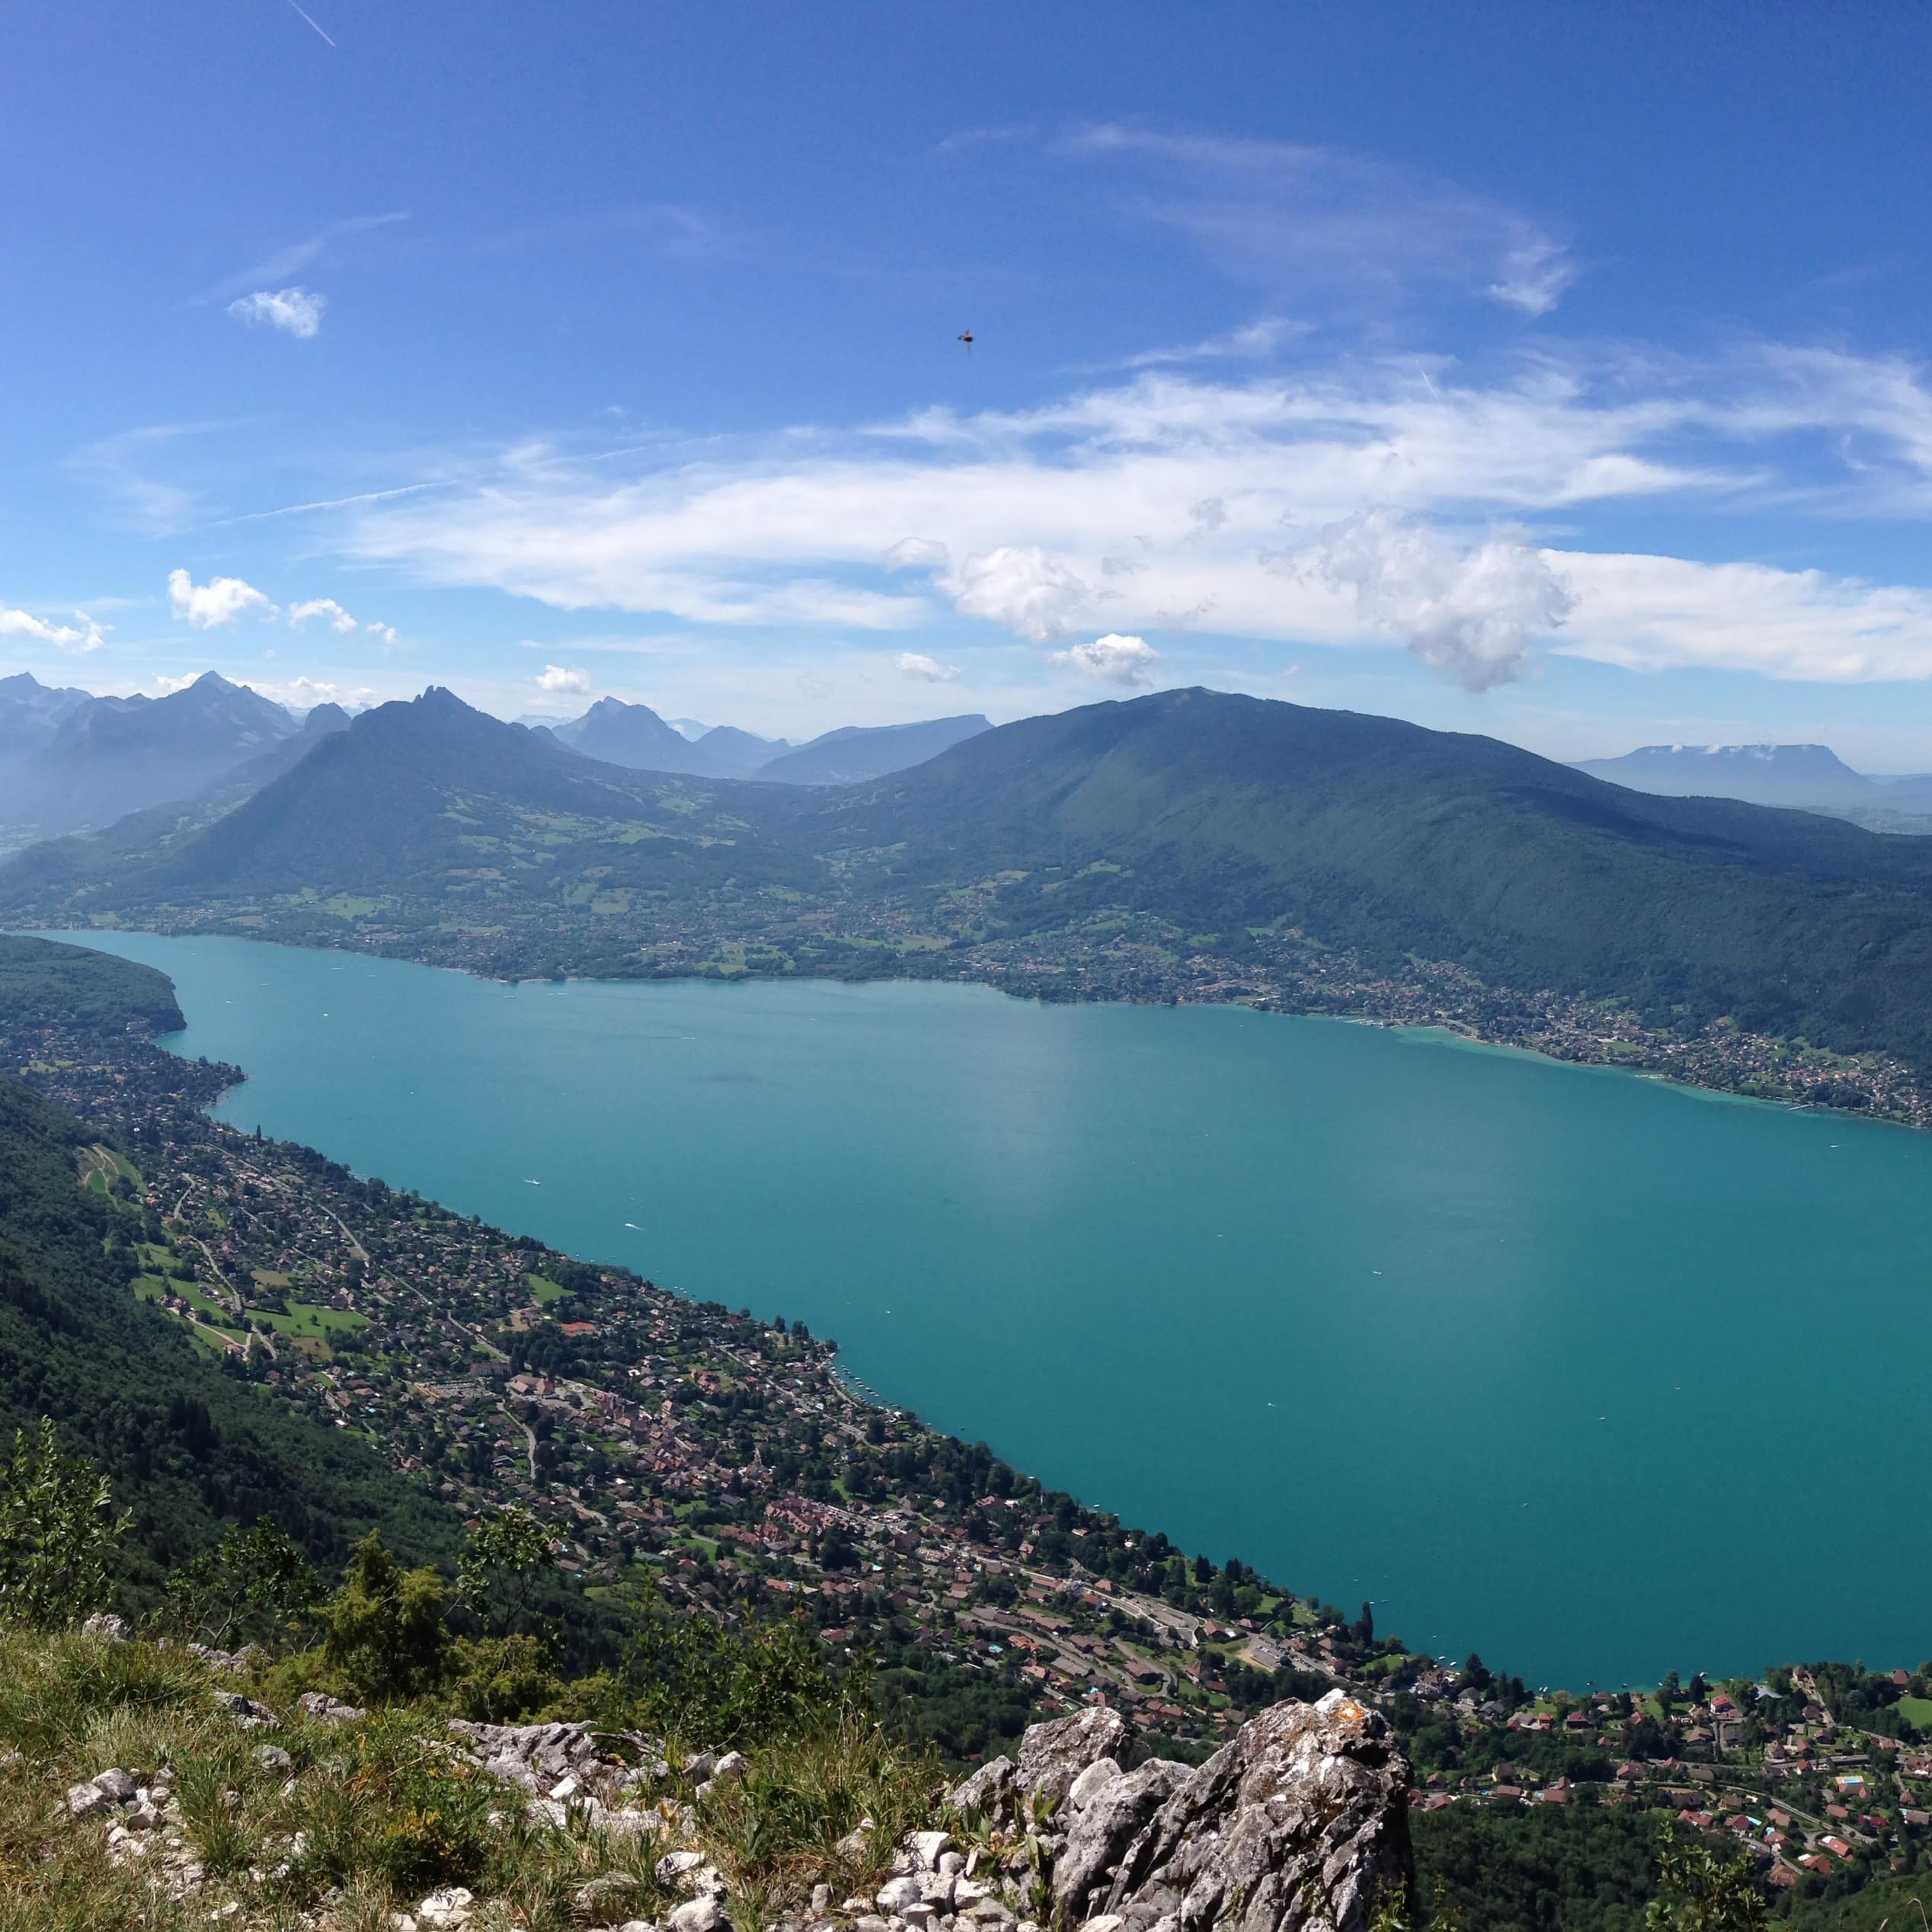 ’Paysage de montagne avec vue sur le magnifique lac d’Annecy aux eaux turquoise